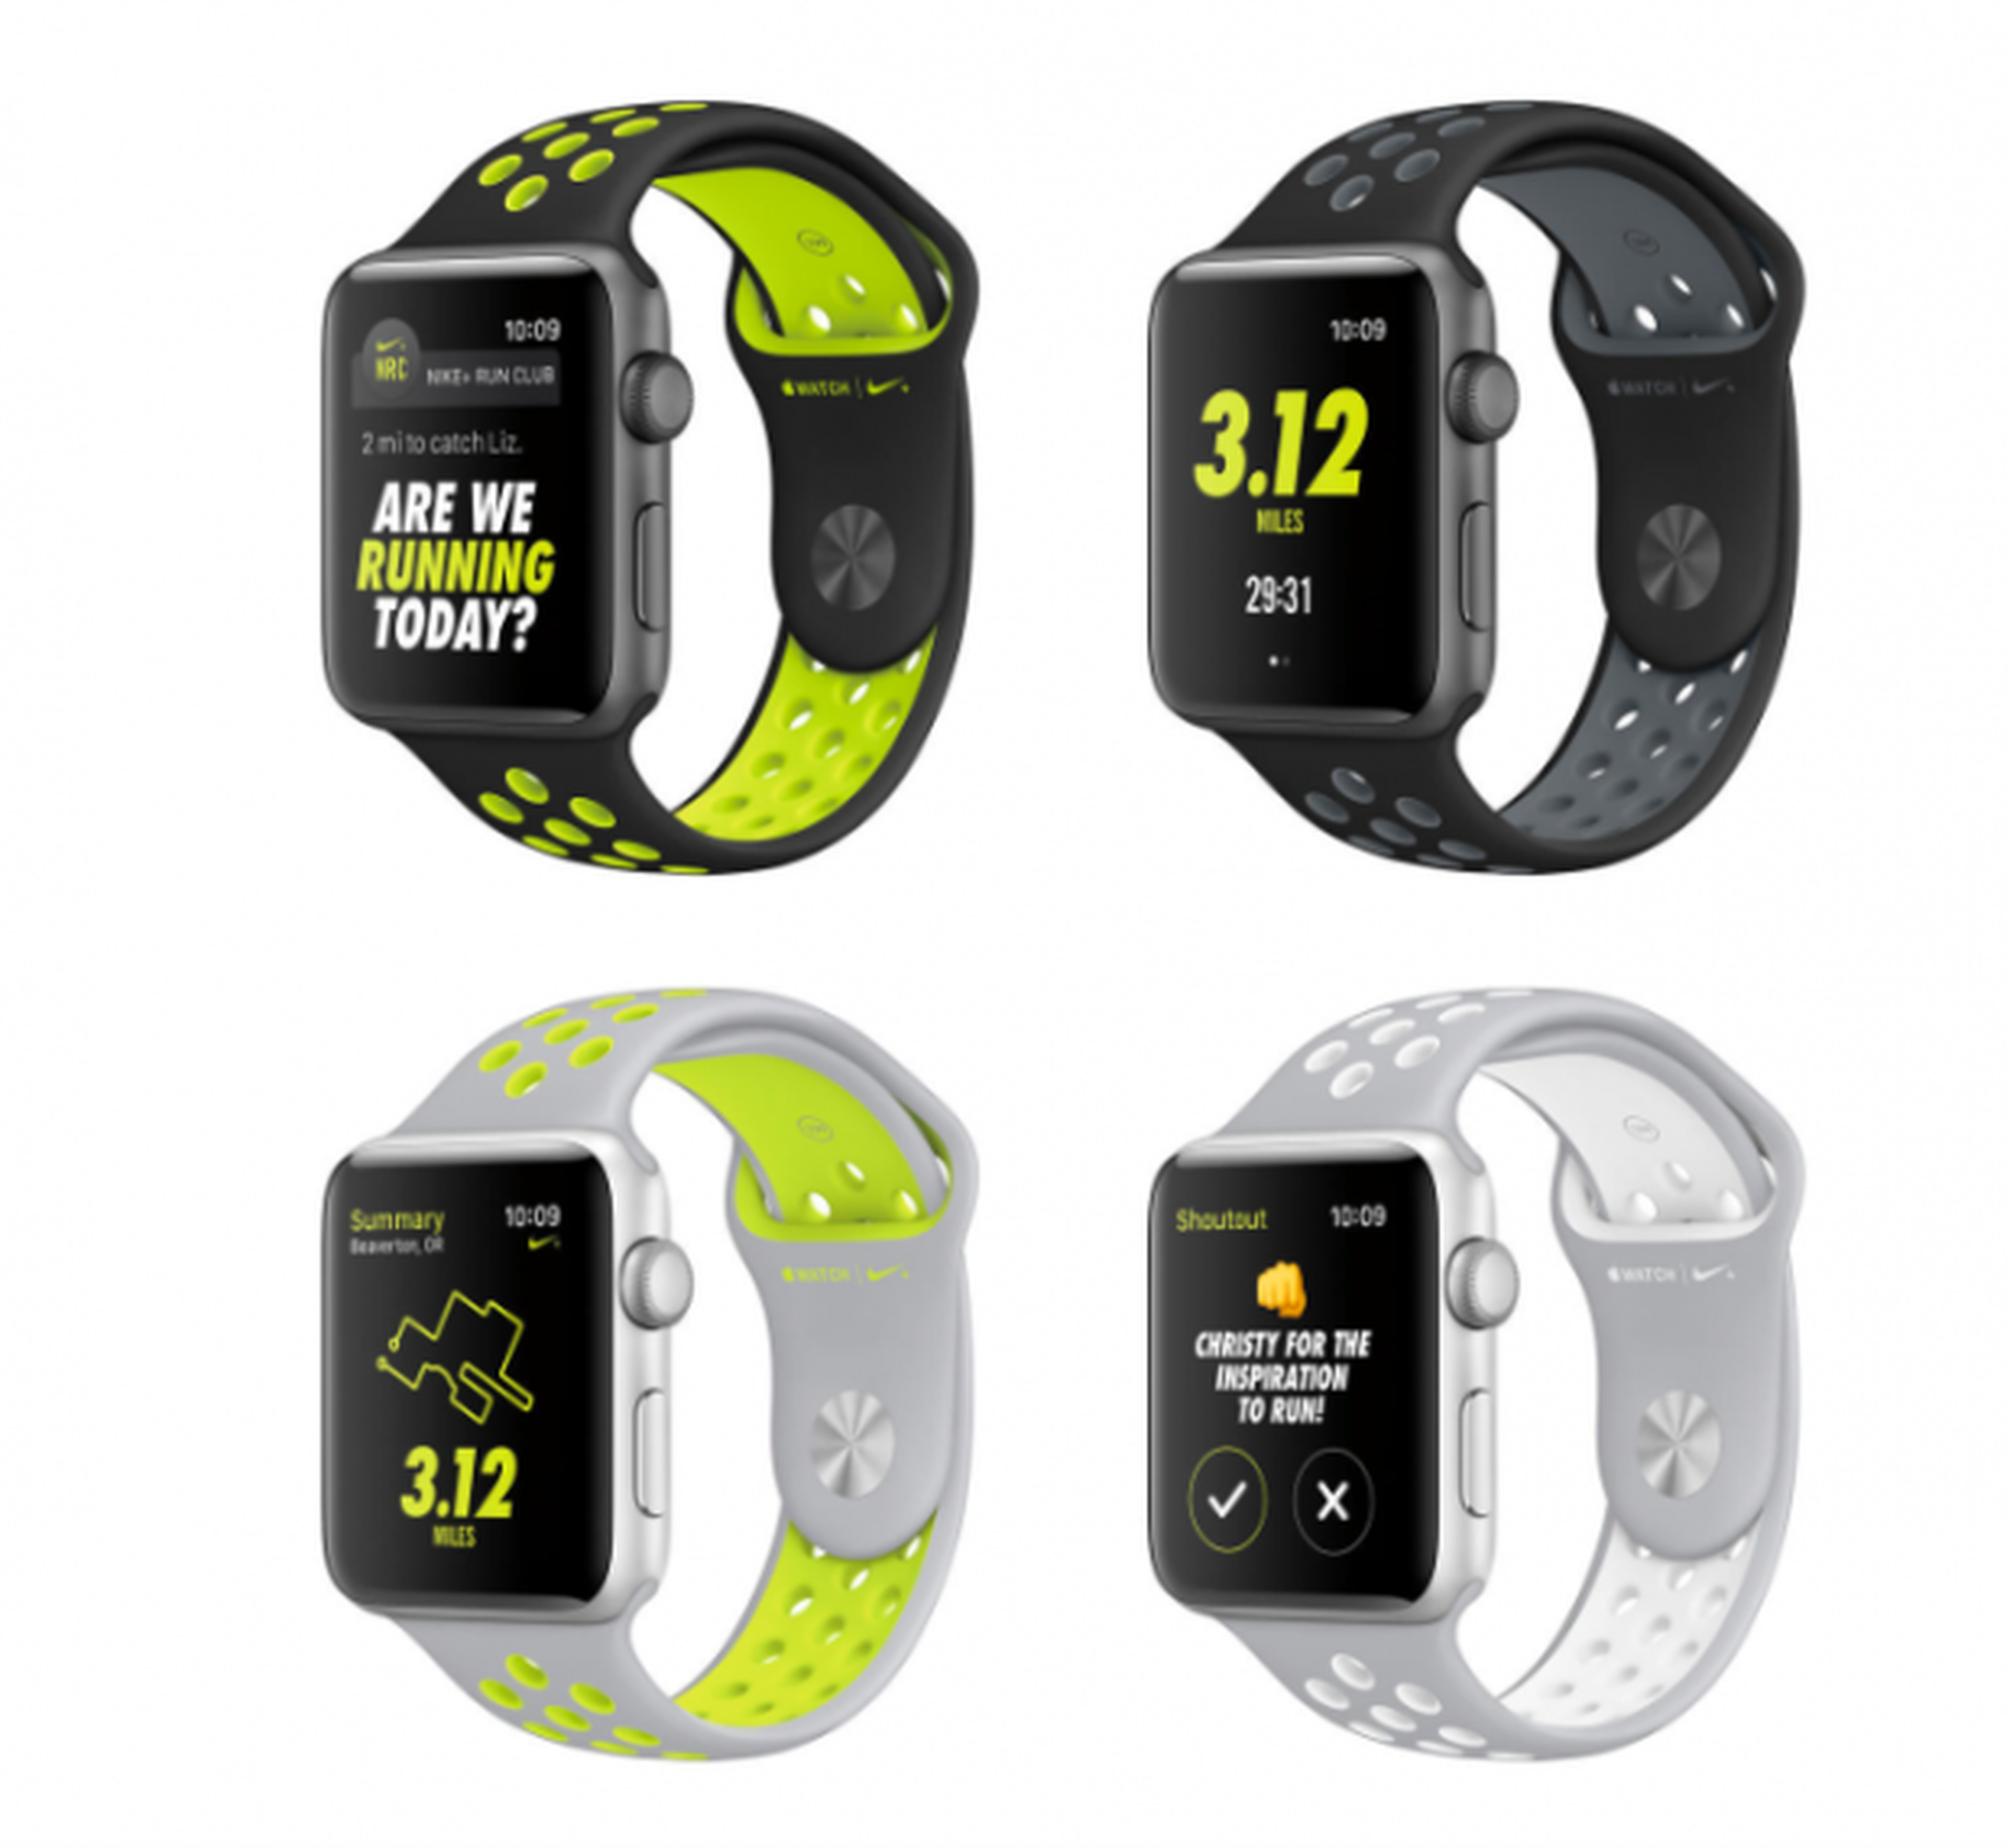 Pato Conmemorativo Golpe fuerte El Apple Watch Series 2 Nike+, fechado para el 28 de octubre | Computer Hoy